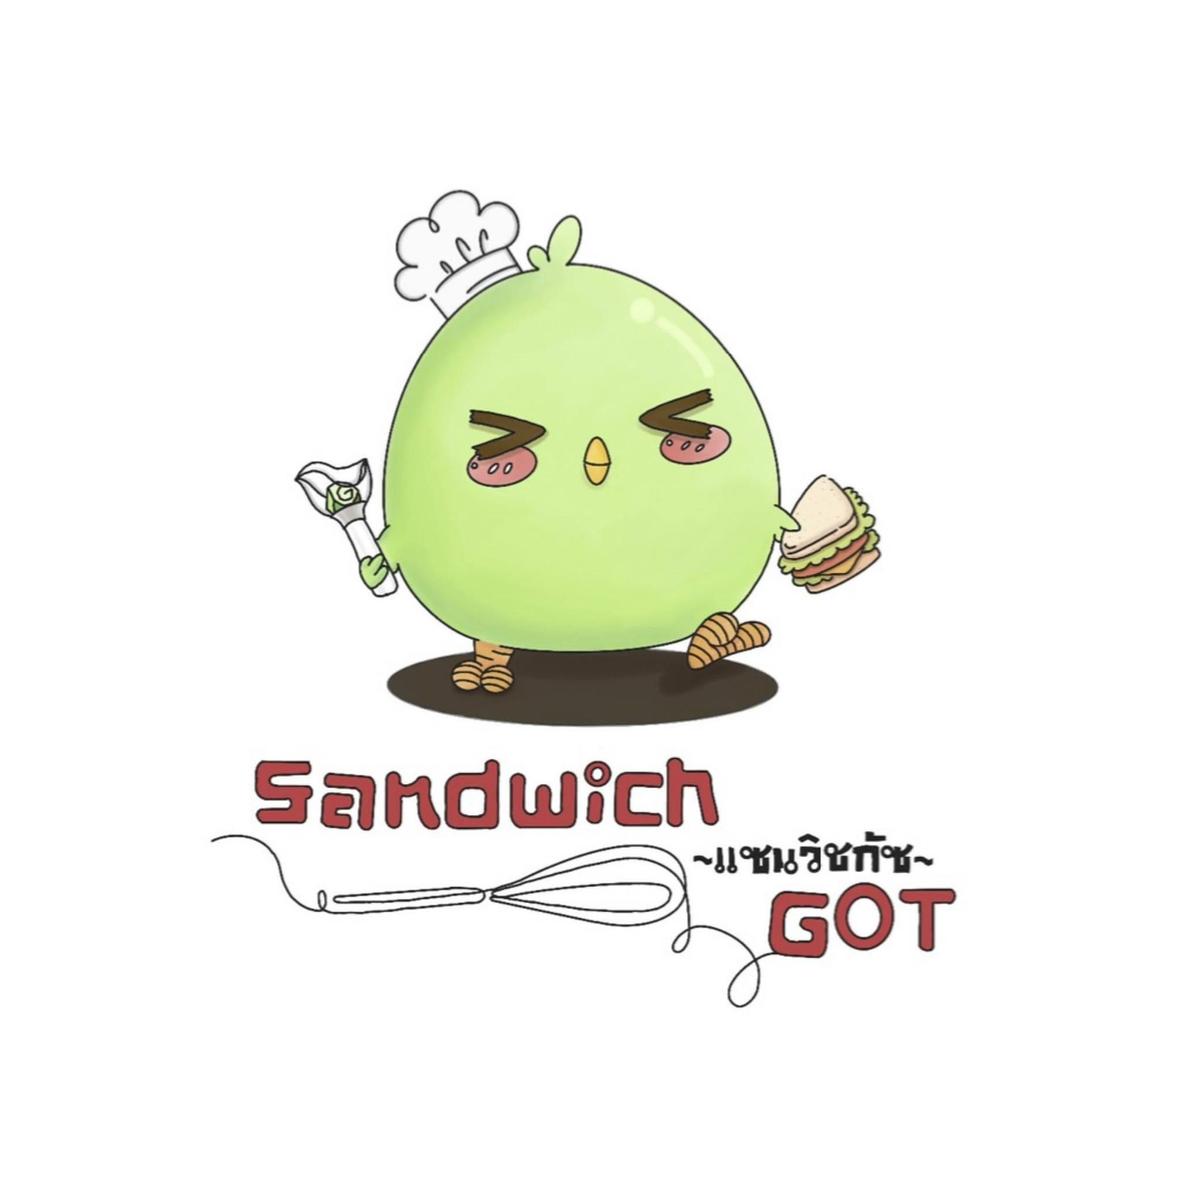 Sandwich GOT